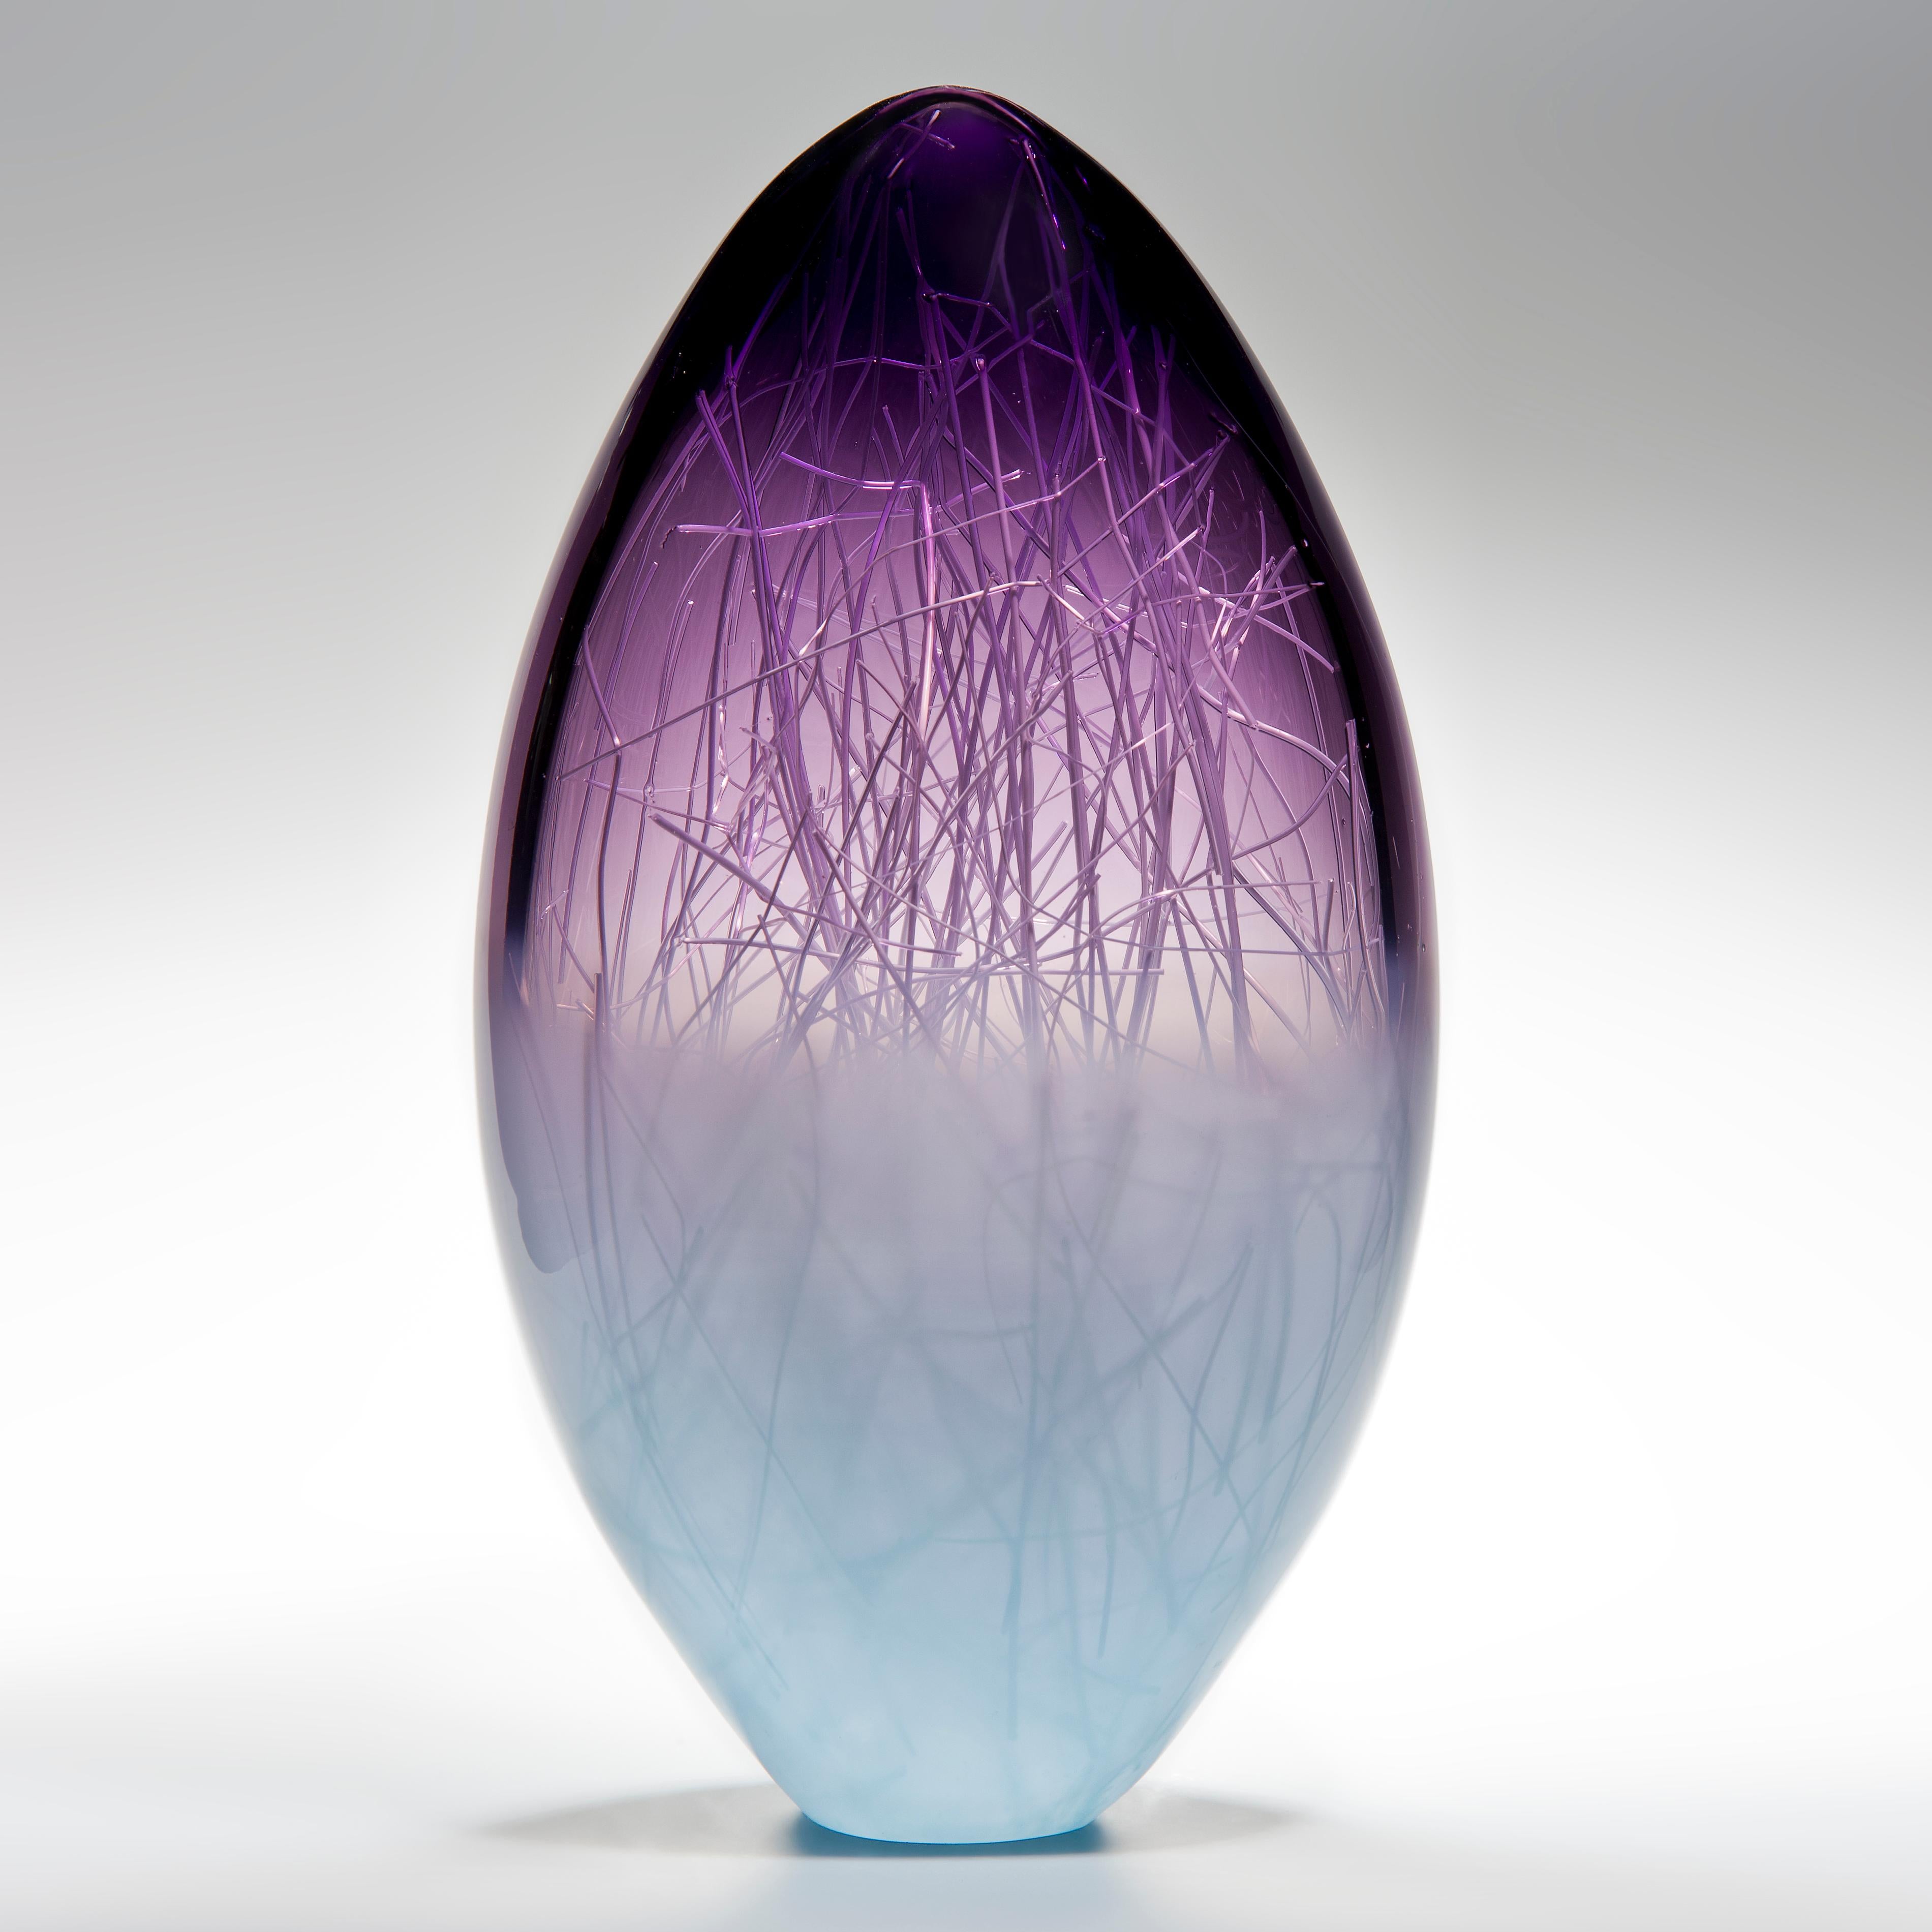 Panicum in Indigo and Pale Turquiose est une sculpture unique en verre de couleur violette et bleu tendre réalisée par les artistes collaboratifs Hanne Enemark (danois) et Louis Thompson (britannique). La forme extérieure en verre contient une